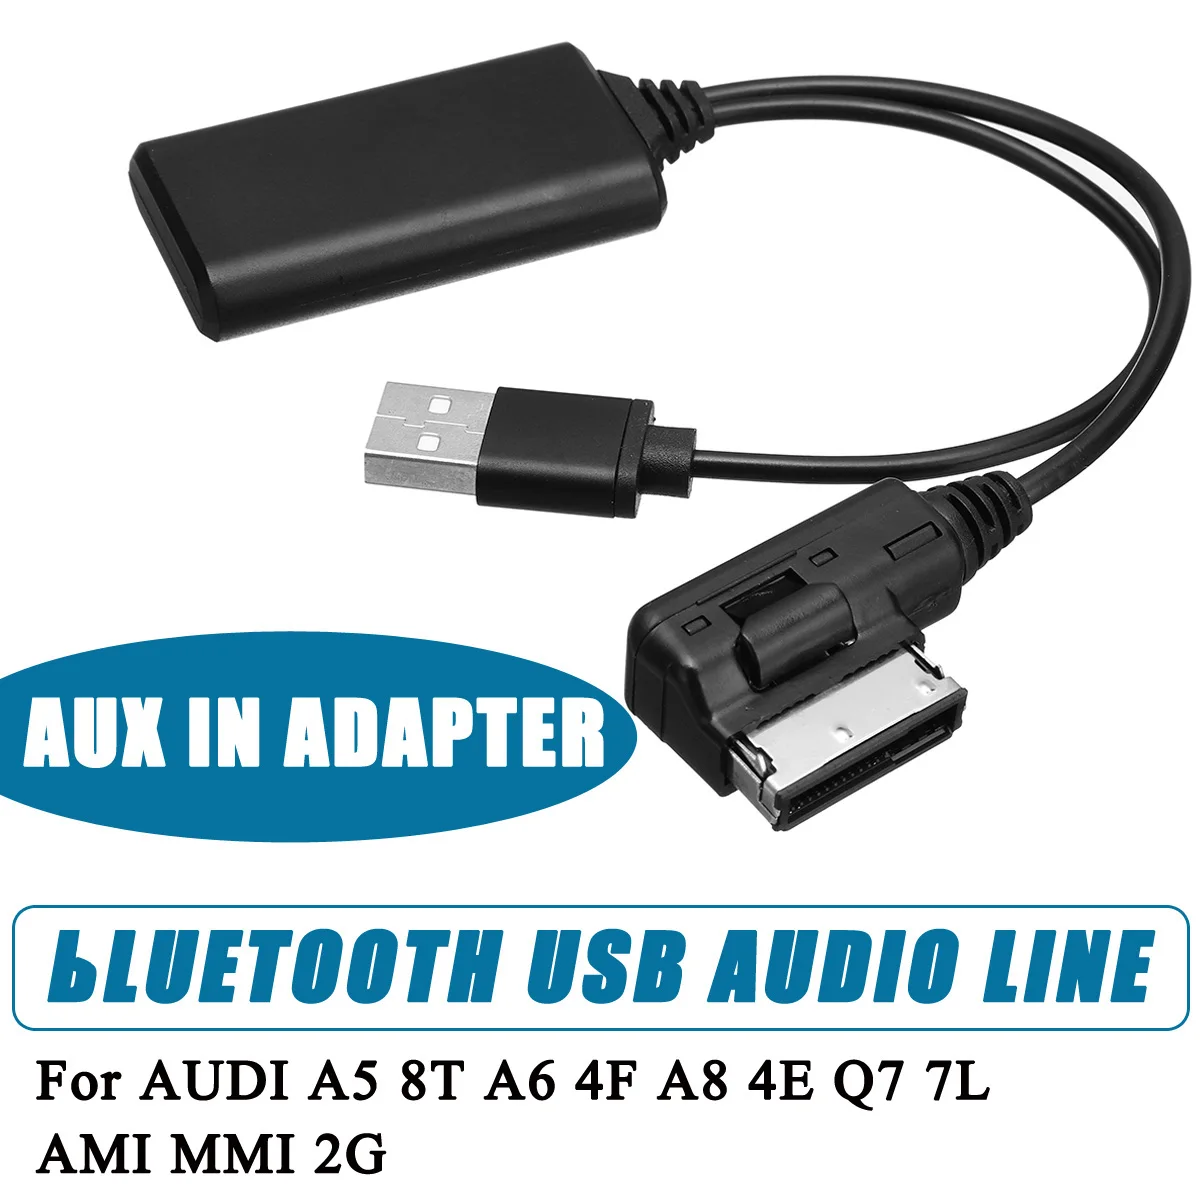 Для AUDI A5, 8 T, A6, 4F, A8, 4E, Q7, 7L, Для AMI, MMI, 2G, мини беспроводной bluetooth, USB, AUX, Кабель-адаптер, музыкальный аудио приемник, адаптер